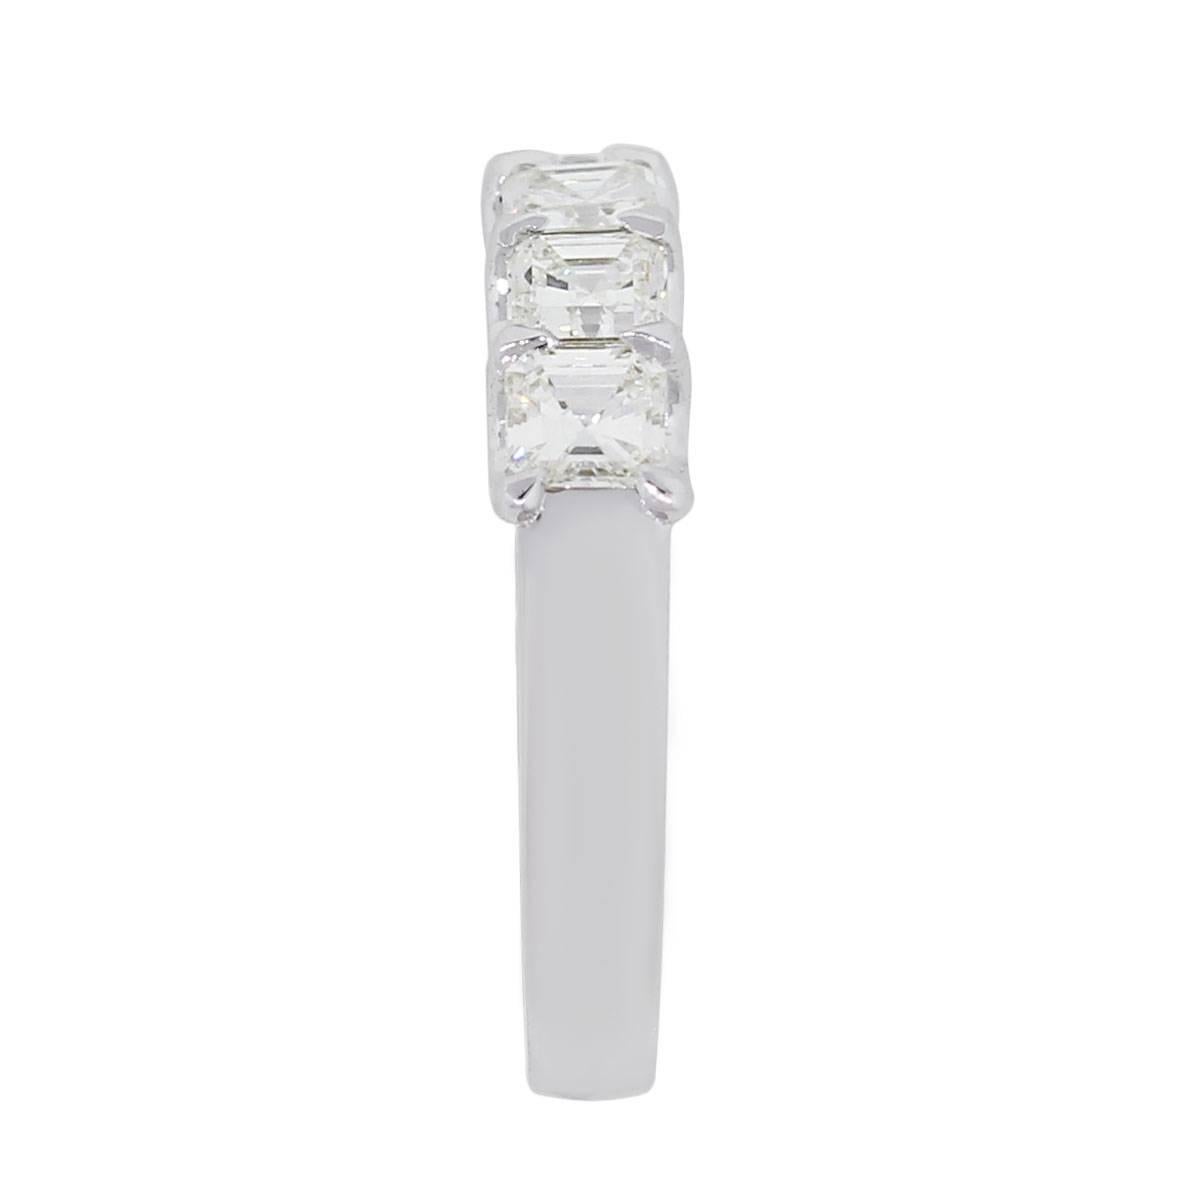 5 stone asscher-cut diamond ring